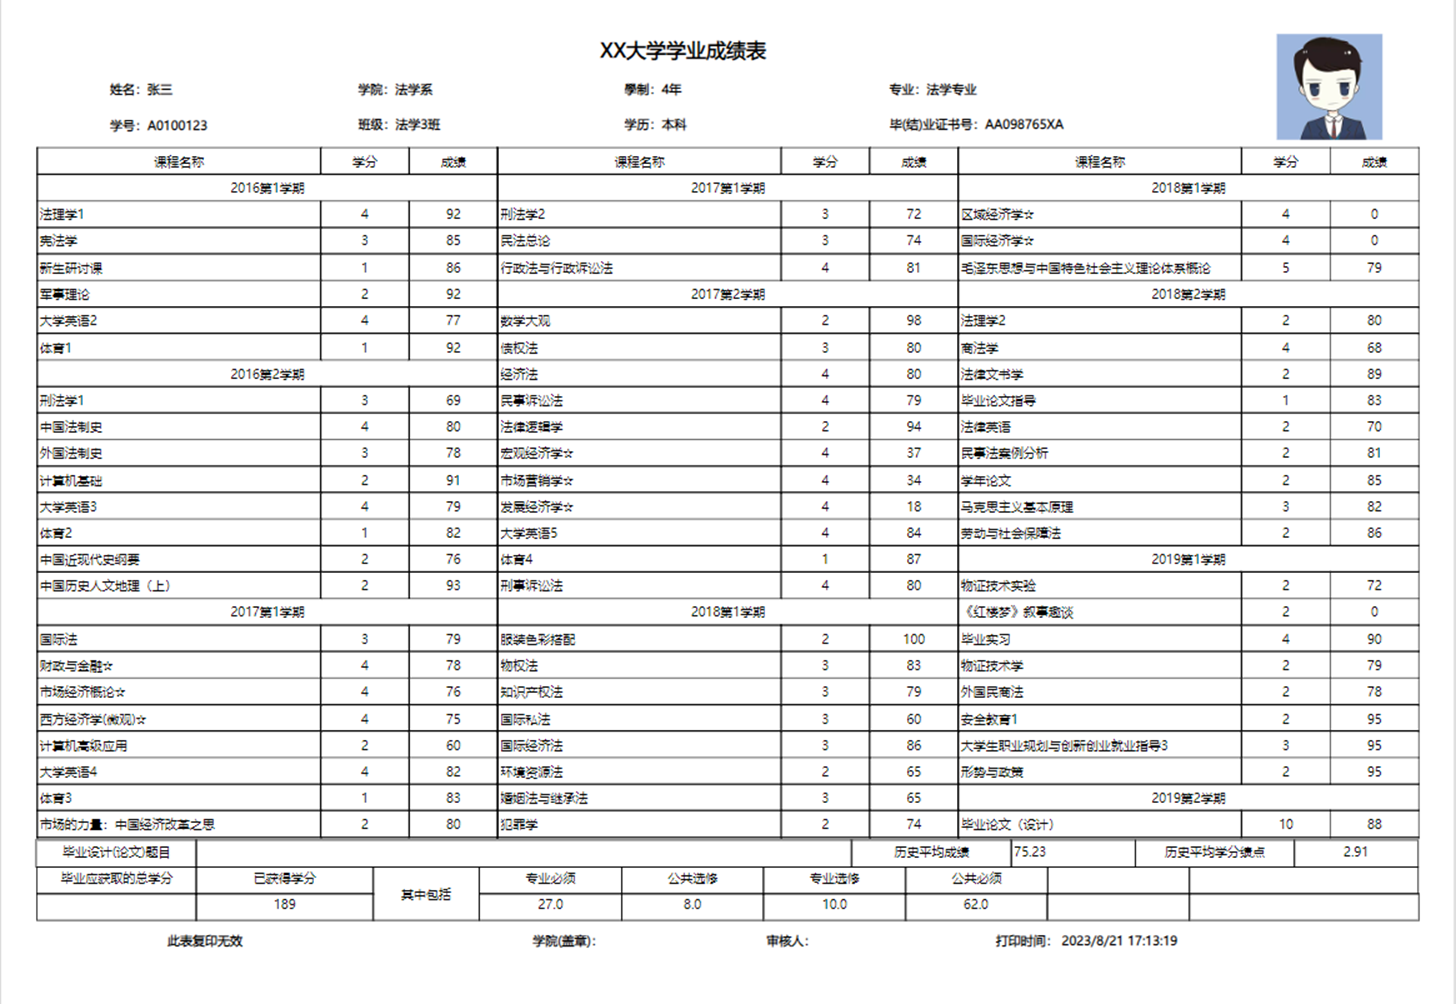 使用Wyn制作的中国式复杂报表